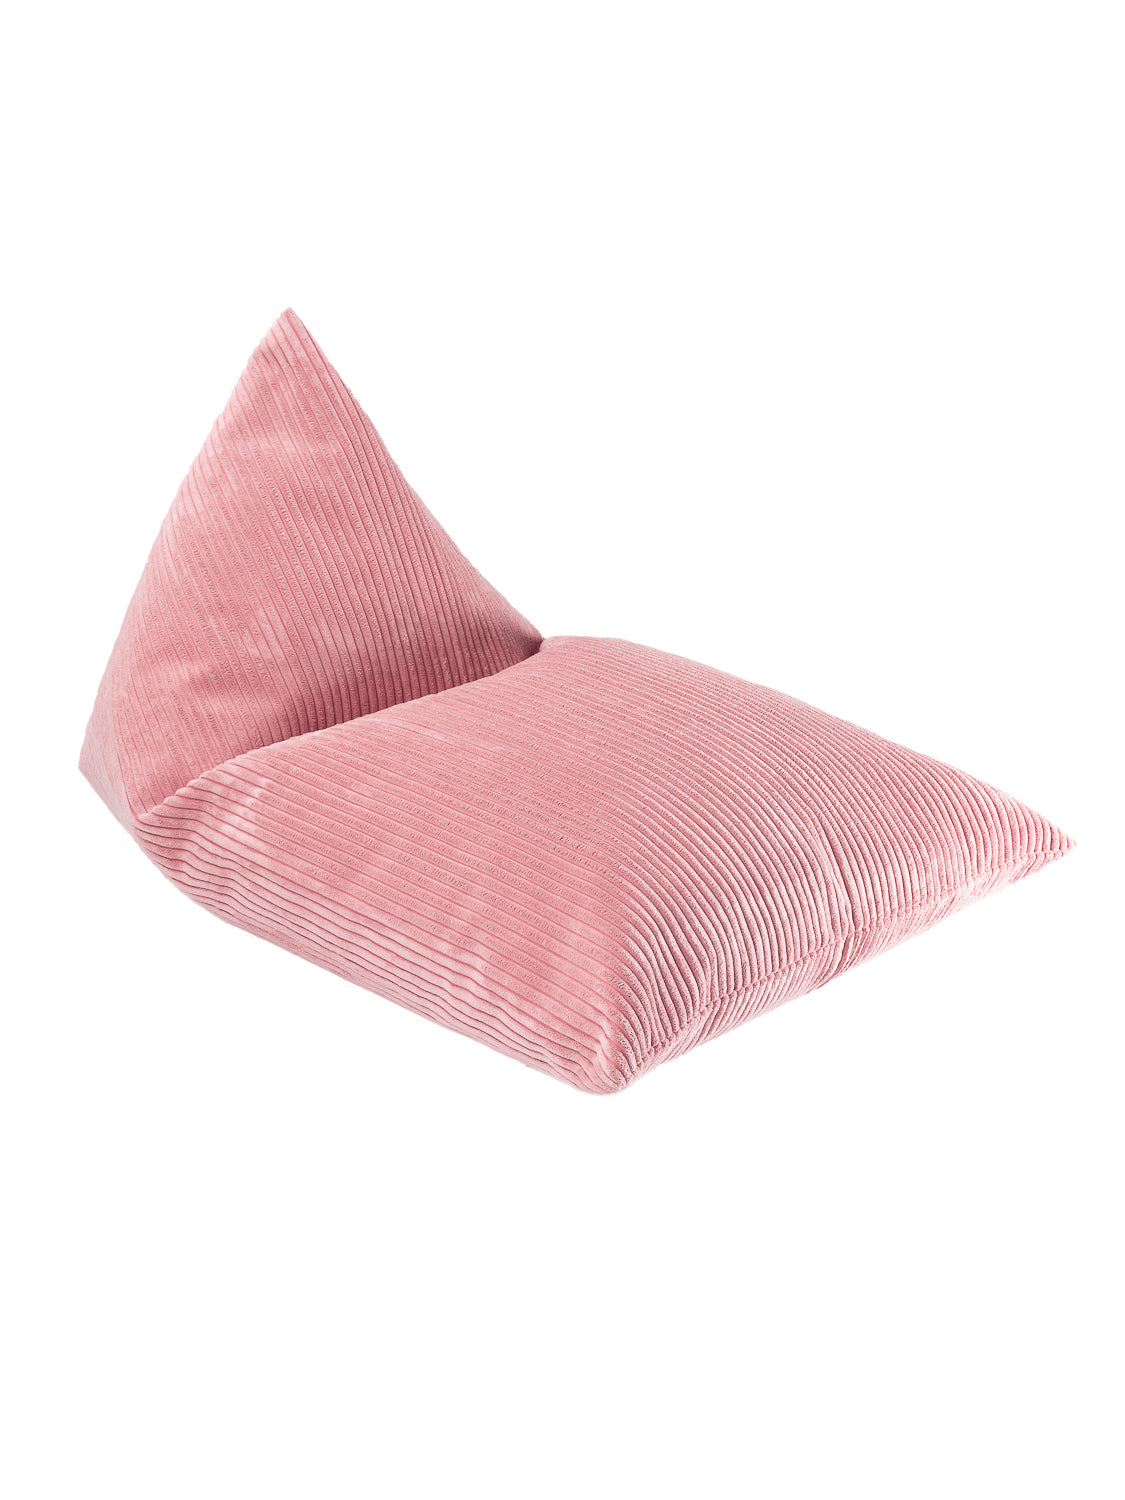 Pouf poire velours rose pour enfant. Fabriqué en Lettonie, tissus certifiés oeko-tex standard 100. Pouf design Wigiwama. 